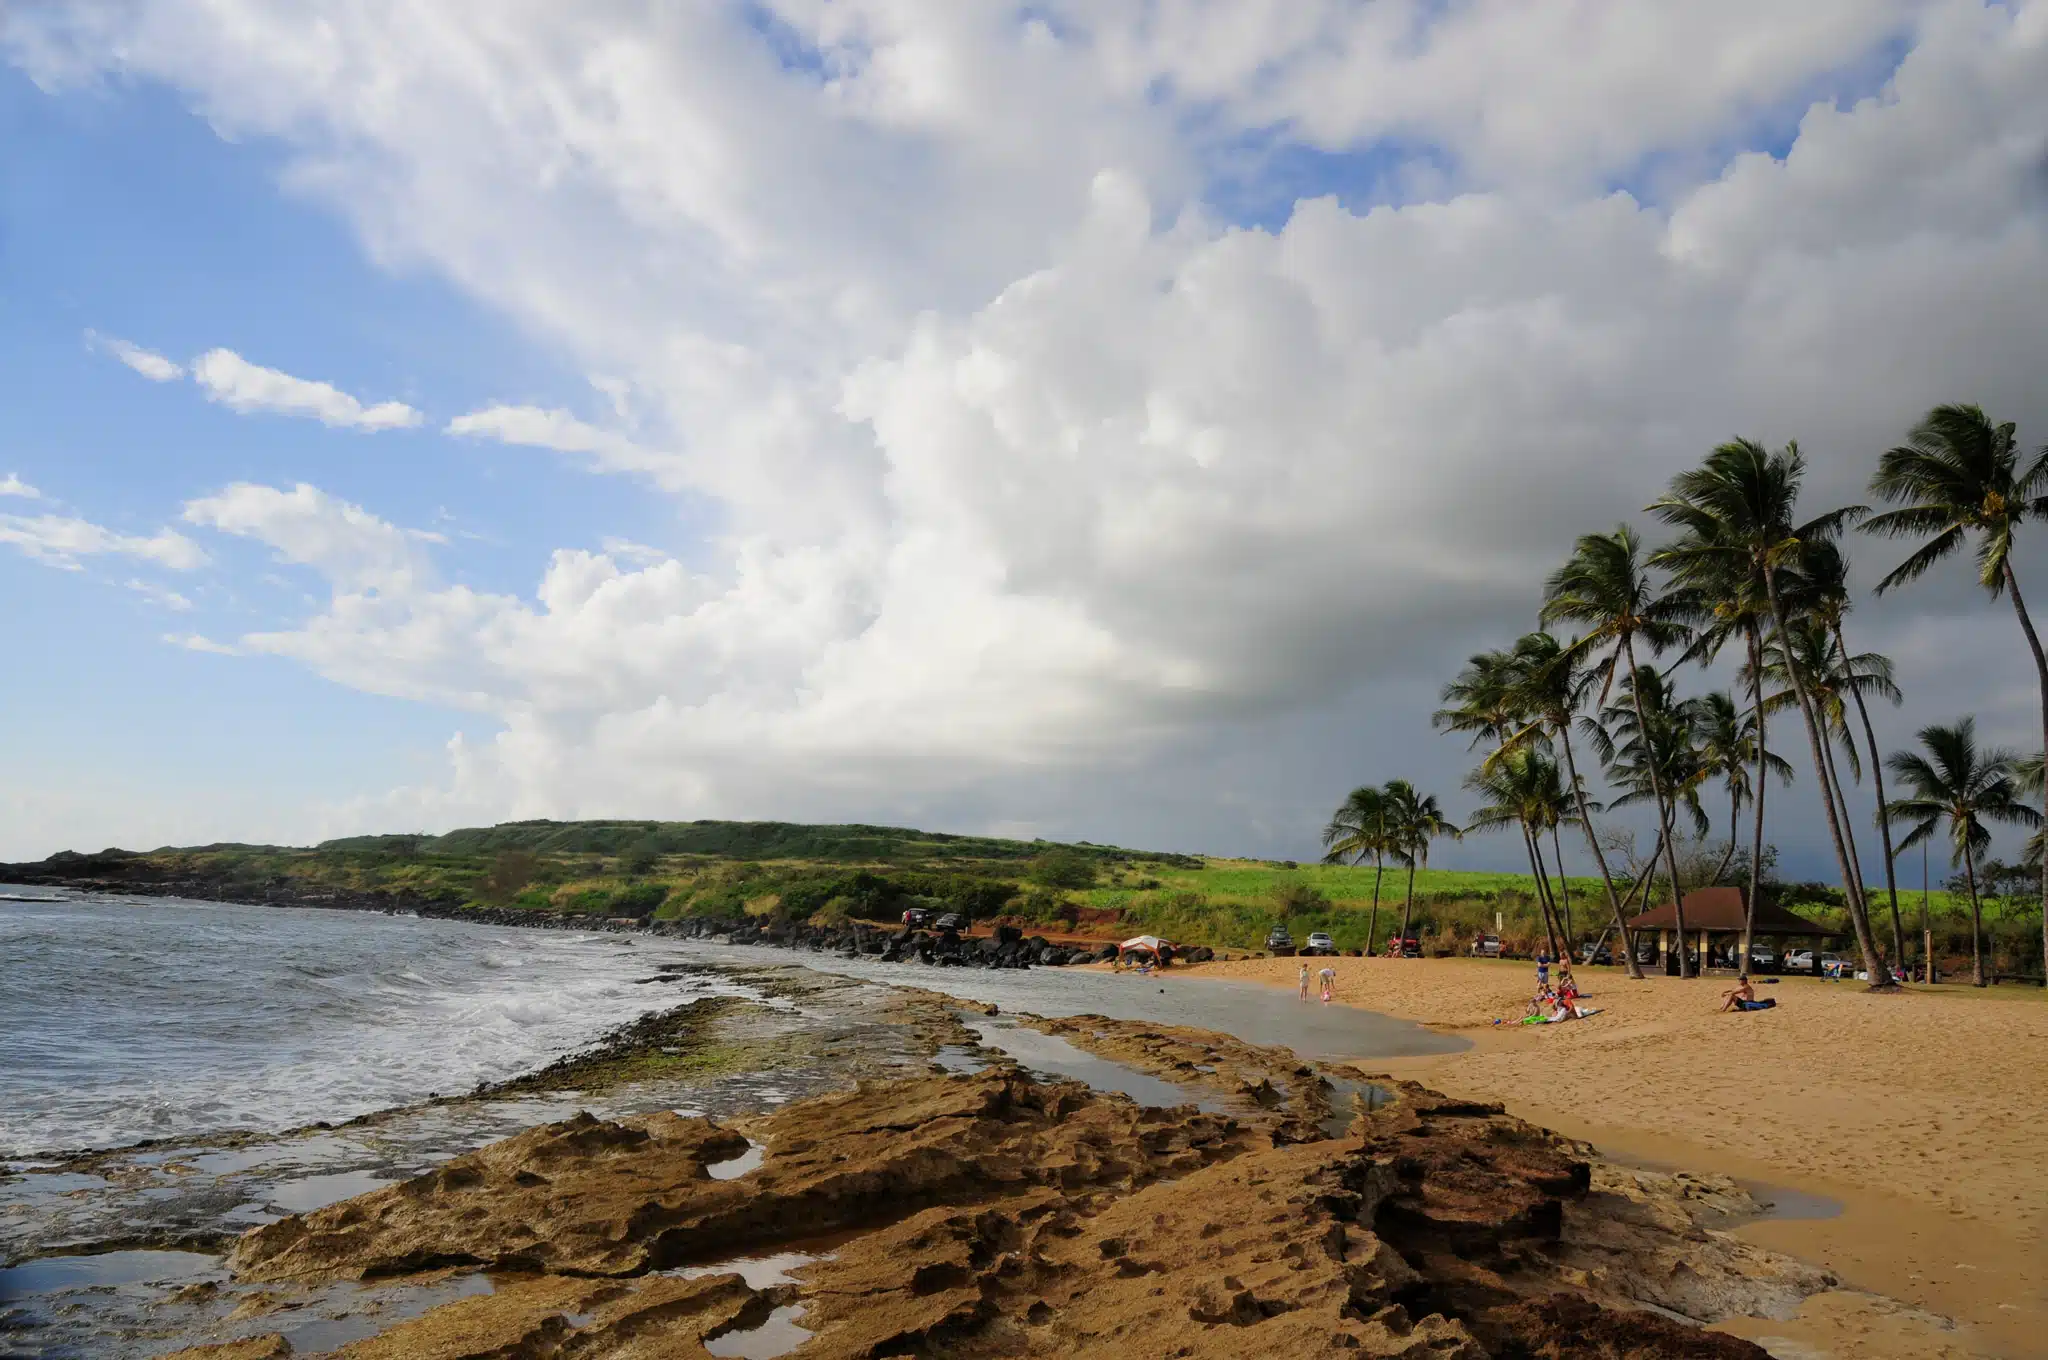 Salt Pond Beach Park is a Beach located in the city of Hanapepe on Kauai, Hawaii